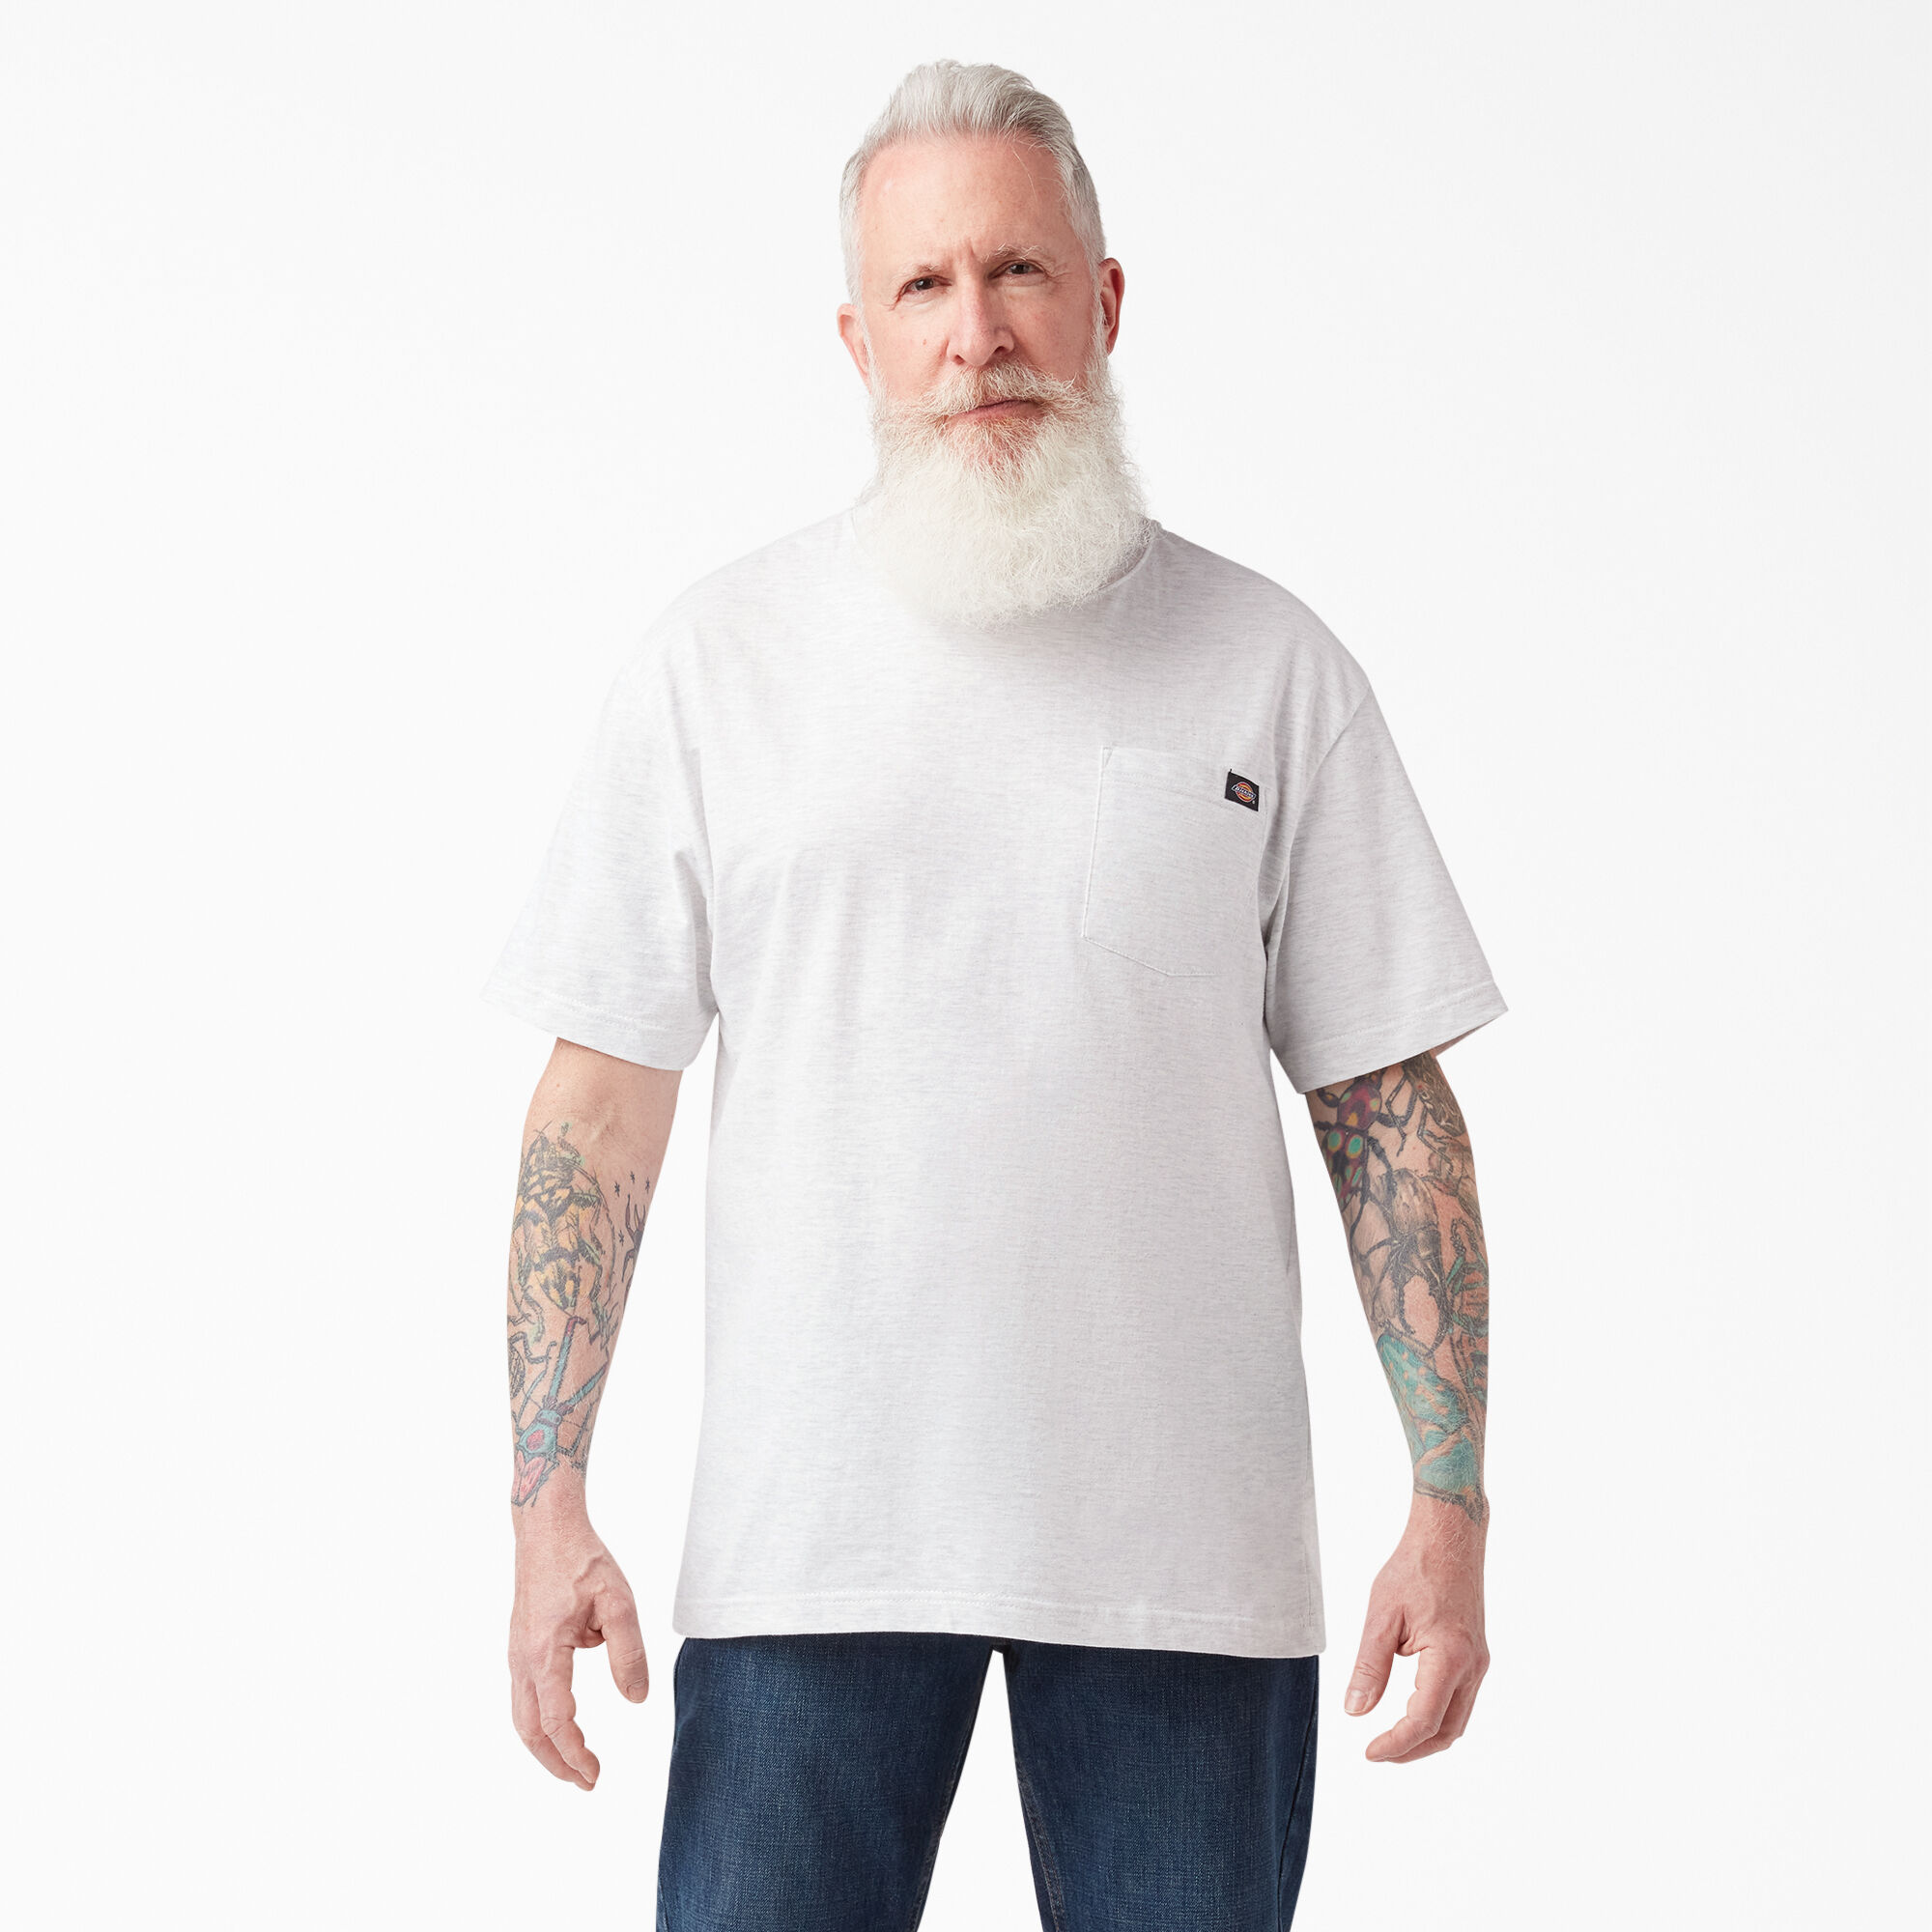 Dickies Two Tone T-Shirt White & Grey Men's Work Top Sizes S-XXXL 